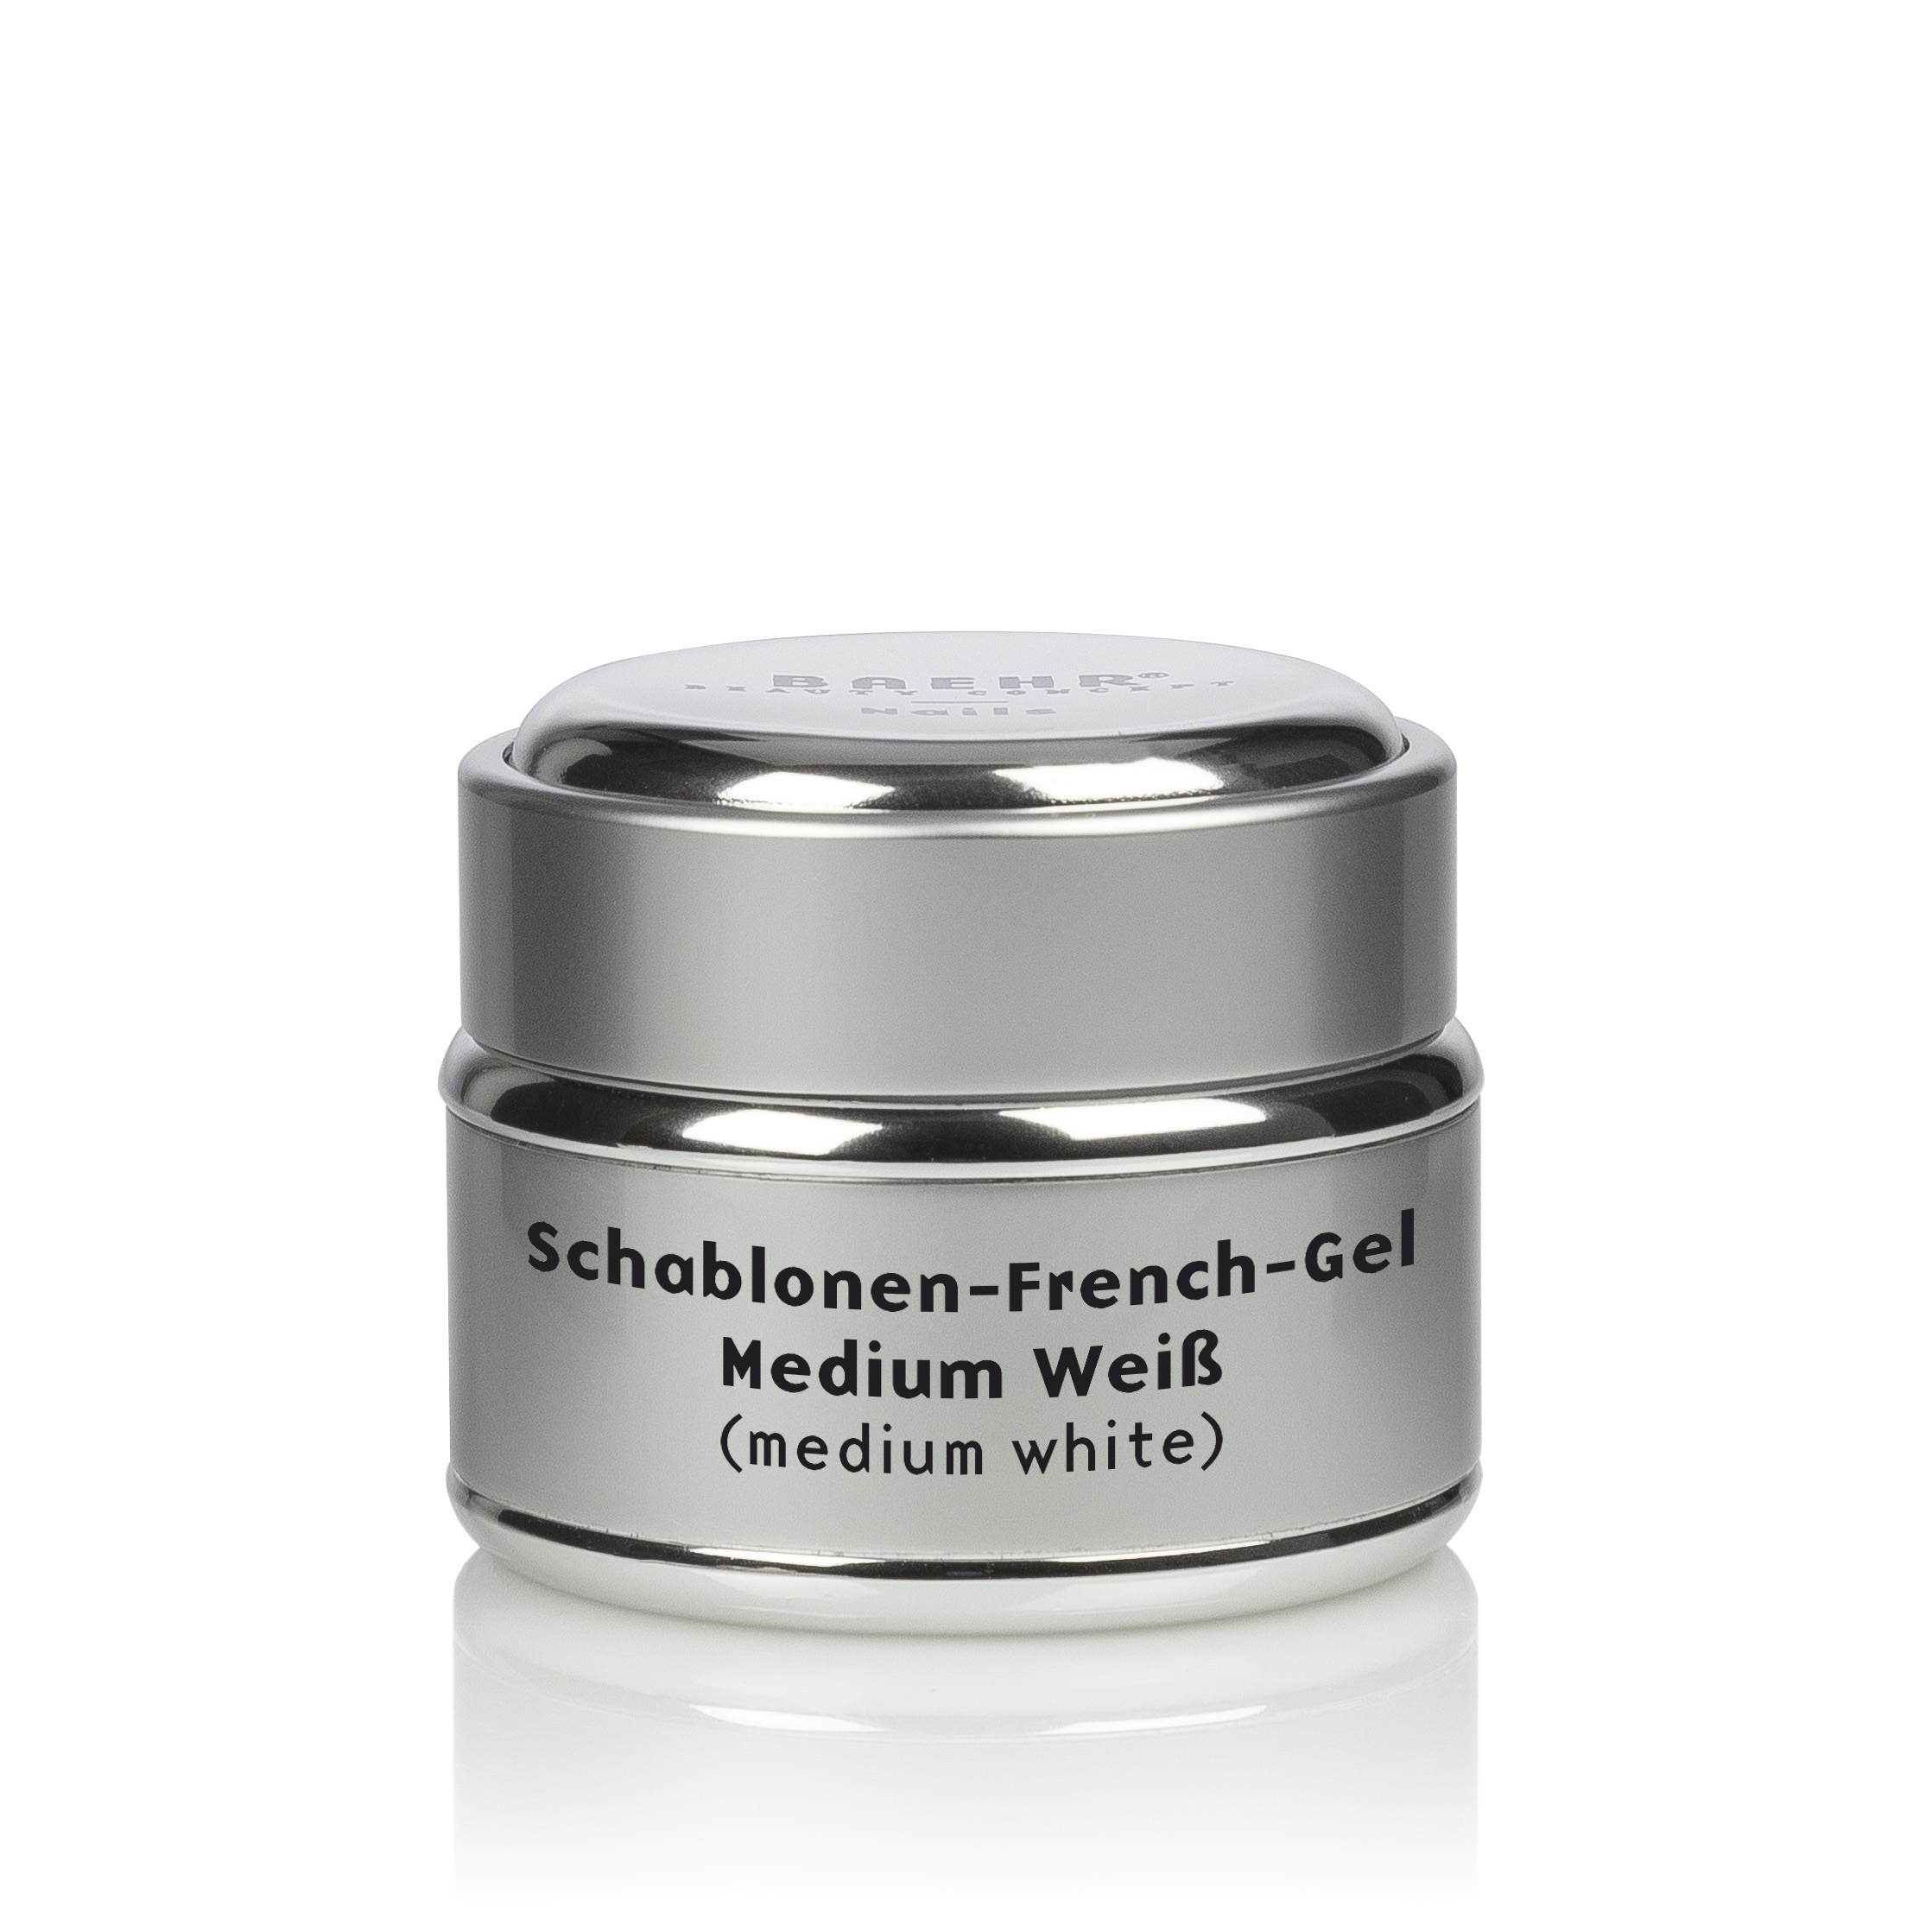 BAEHR BEAUTY CONCEPT NAILS Schablonen French-Gel Medium Weiß 30 ml